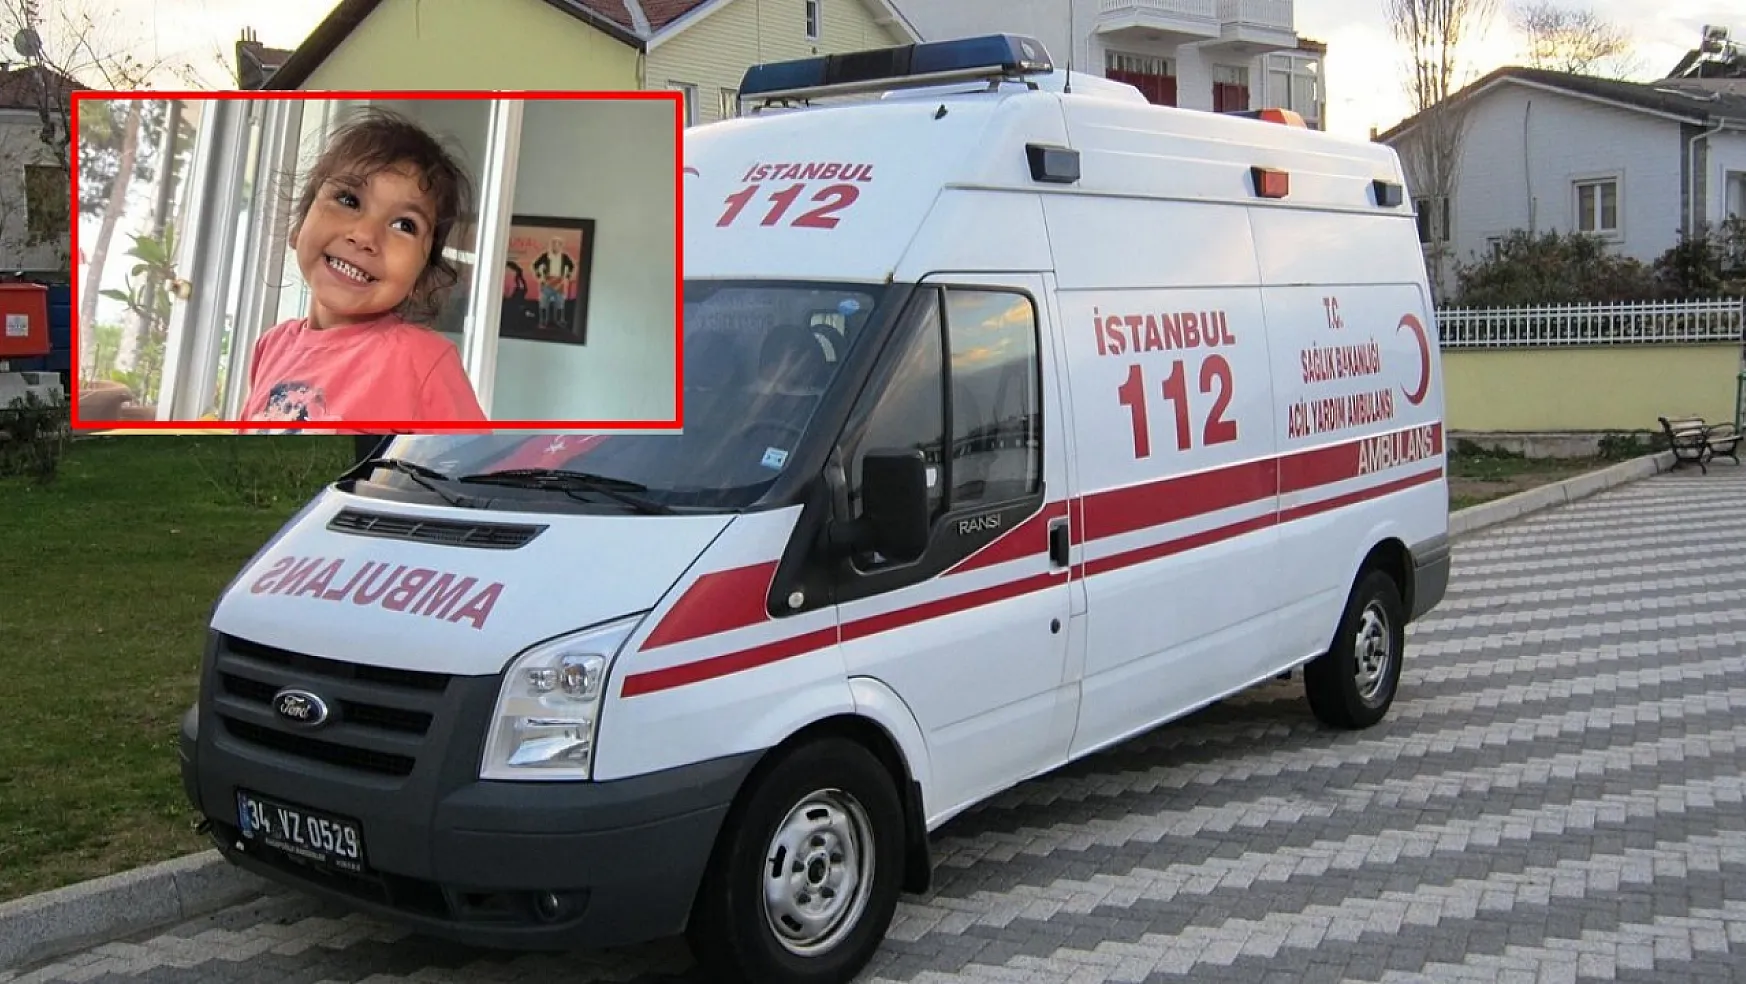 Serum verilerek evine gönderilen çocuk tekrar hastaneye götürülürken ambulansta öldü